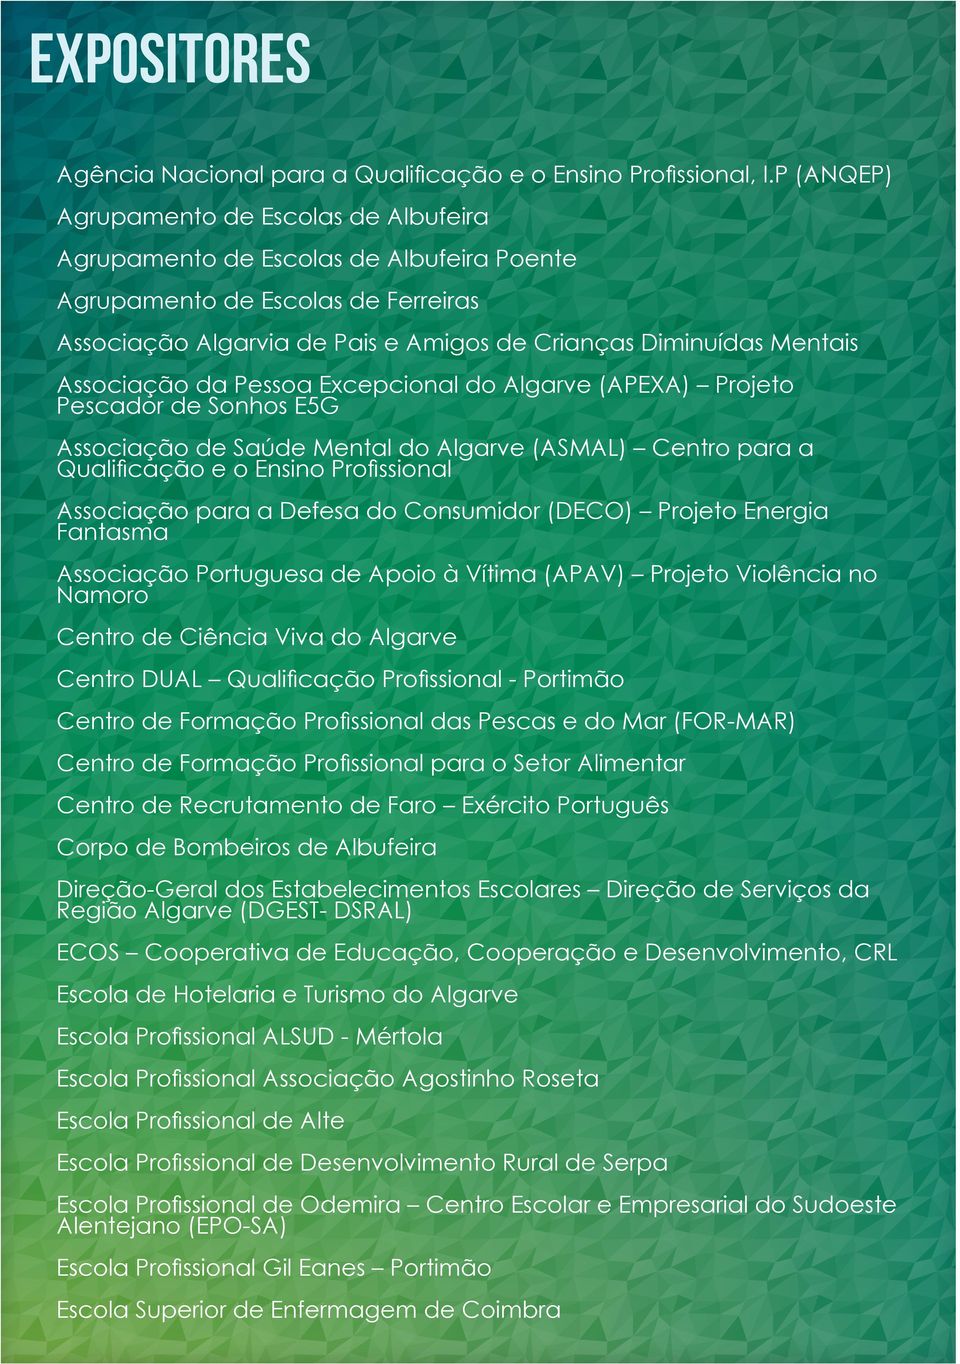 Associação da Pessoa Excepcional do Algarve (APEXA) Projeto Pescador de Sonhos E5G Associação de Saúde Mental do Algarve (ASMAL) Centro para a Qualificação e o Ensino Profissional Associação para a